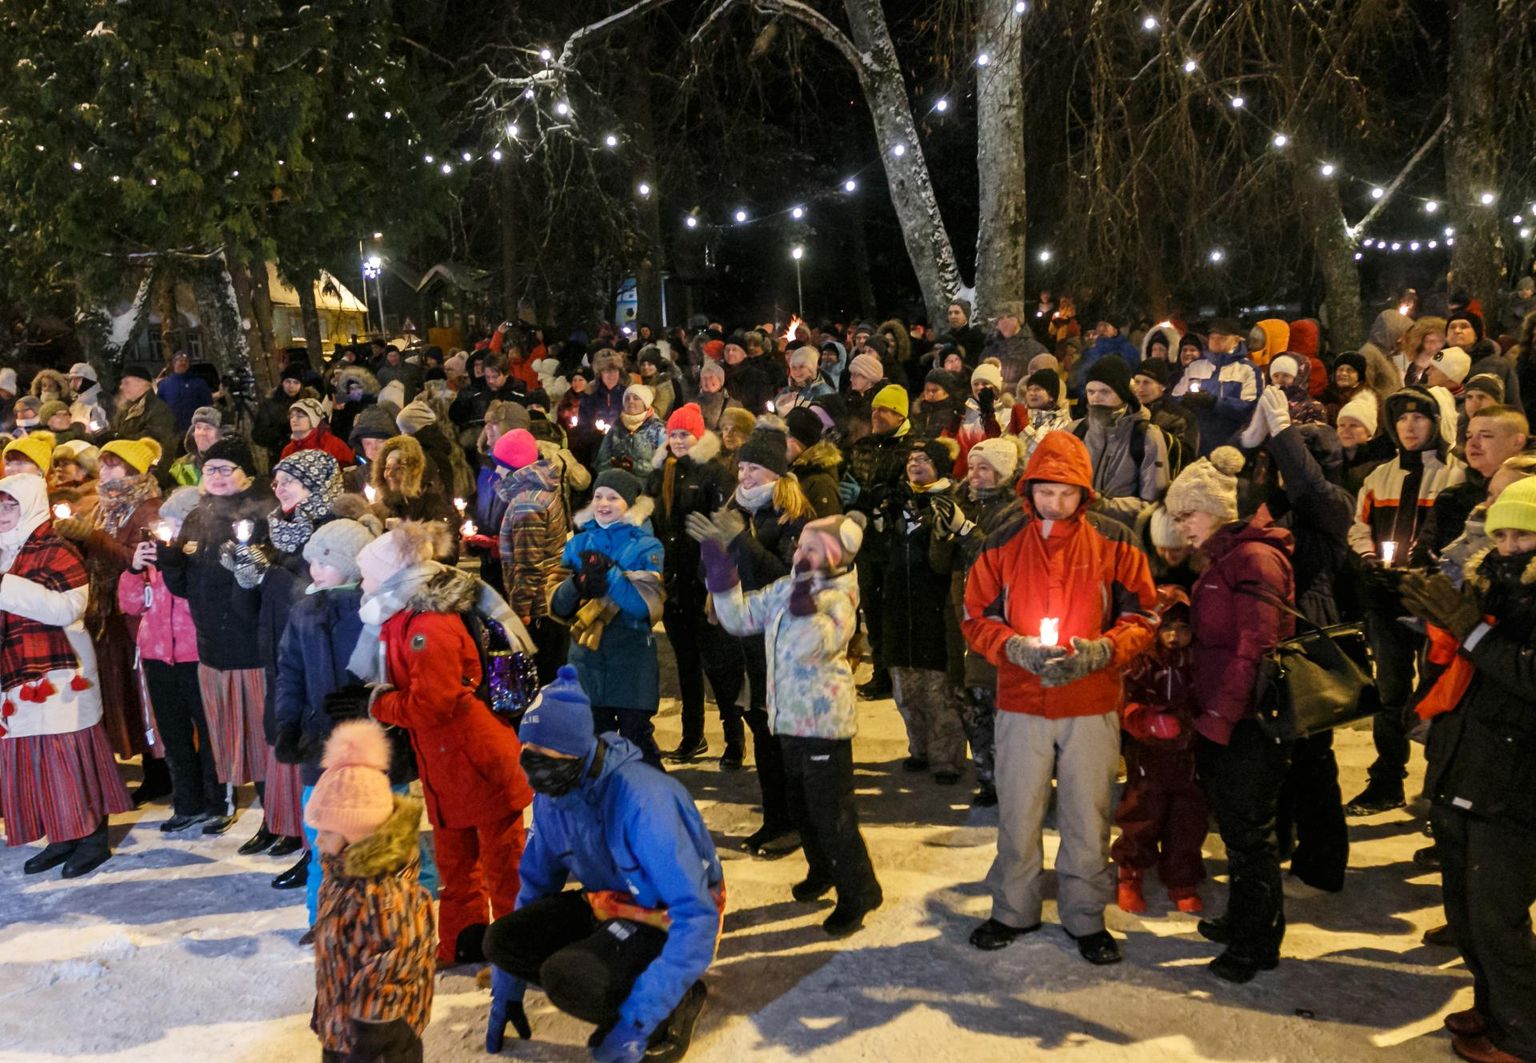 V Eesti Talveöölaulupidu peeti Otepää kultuurimaja pargis. Rahvas kogunes lõkete ja lava ümber, kus astusid üles mitmed lauljad.